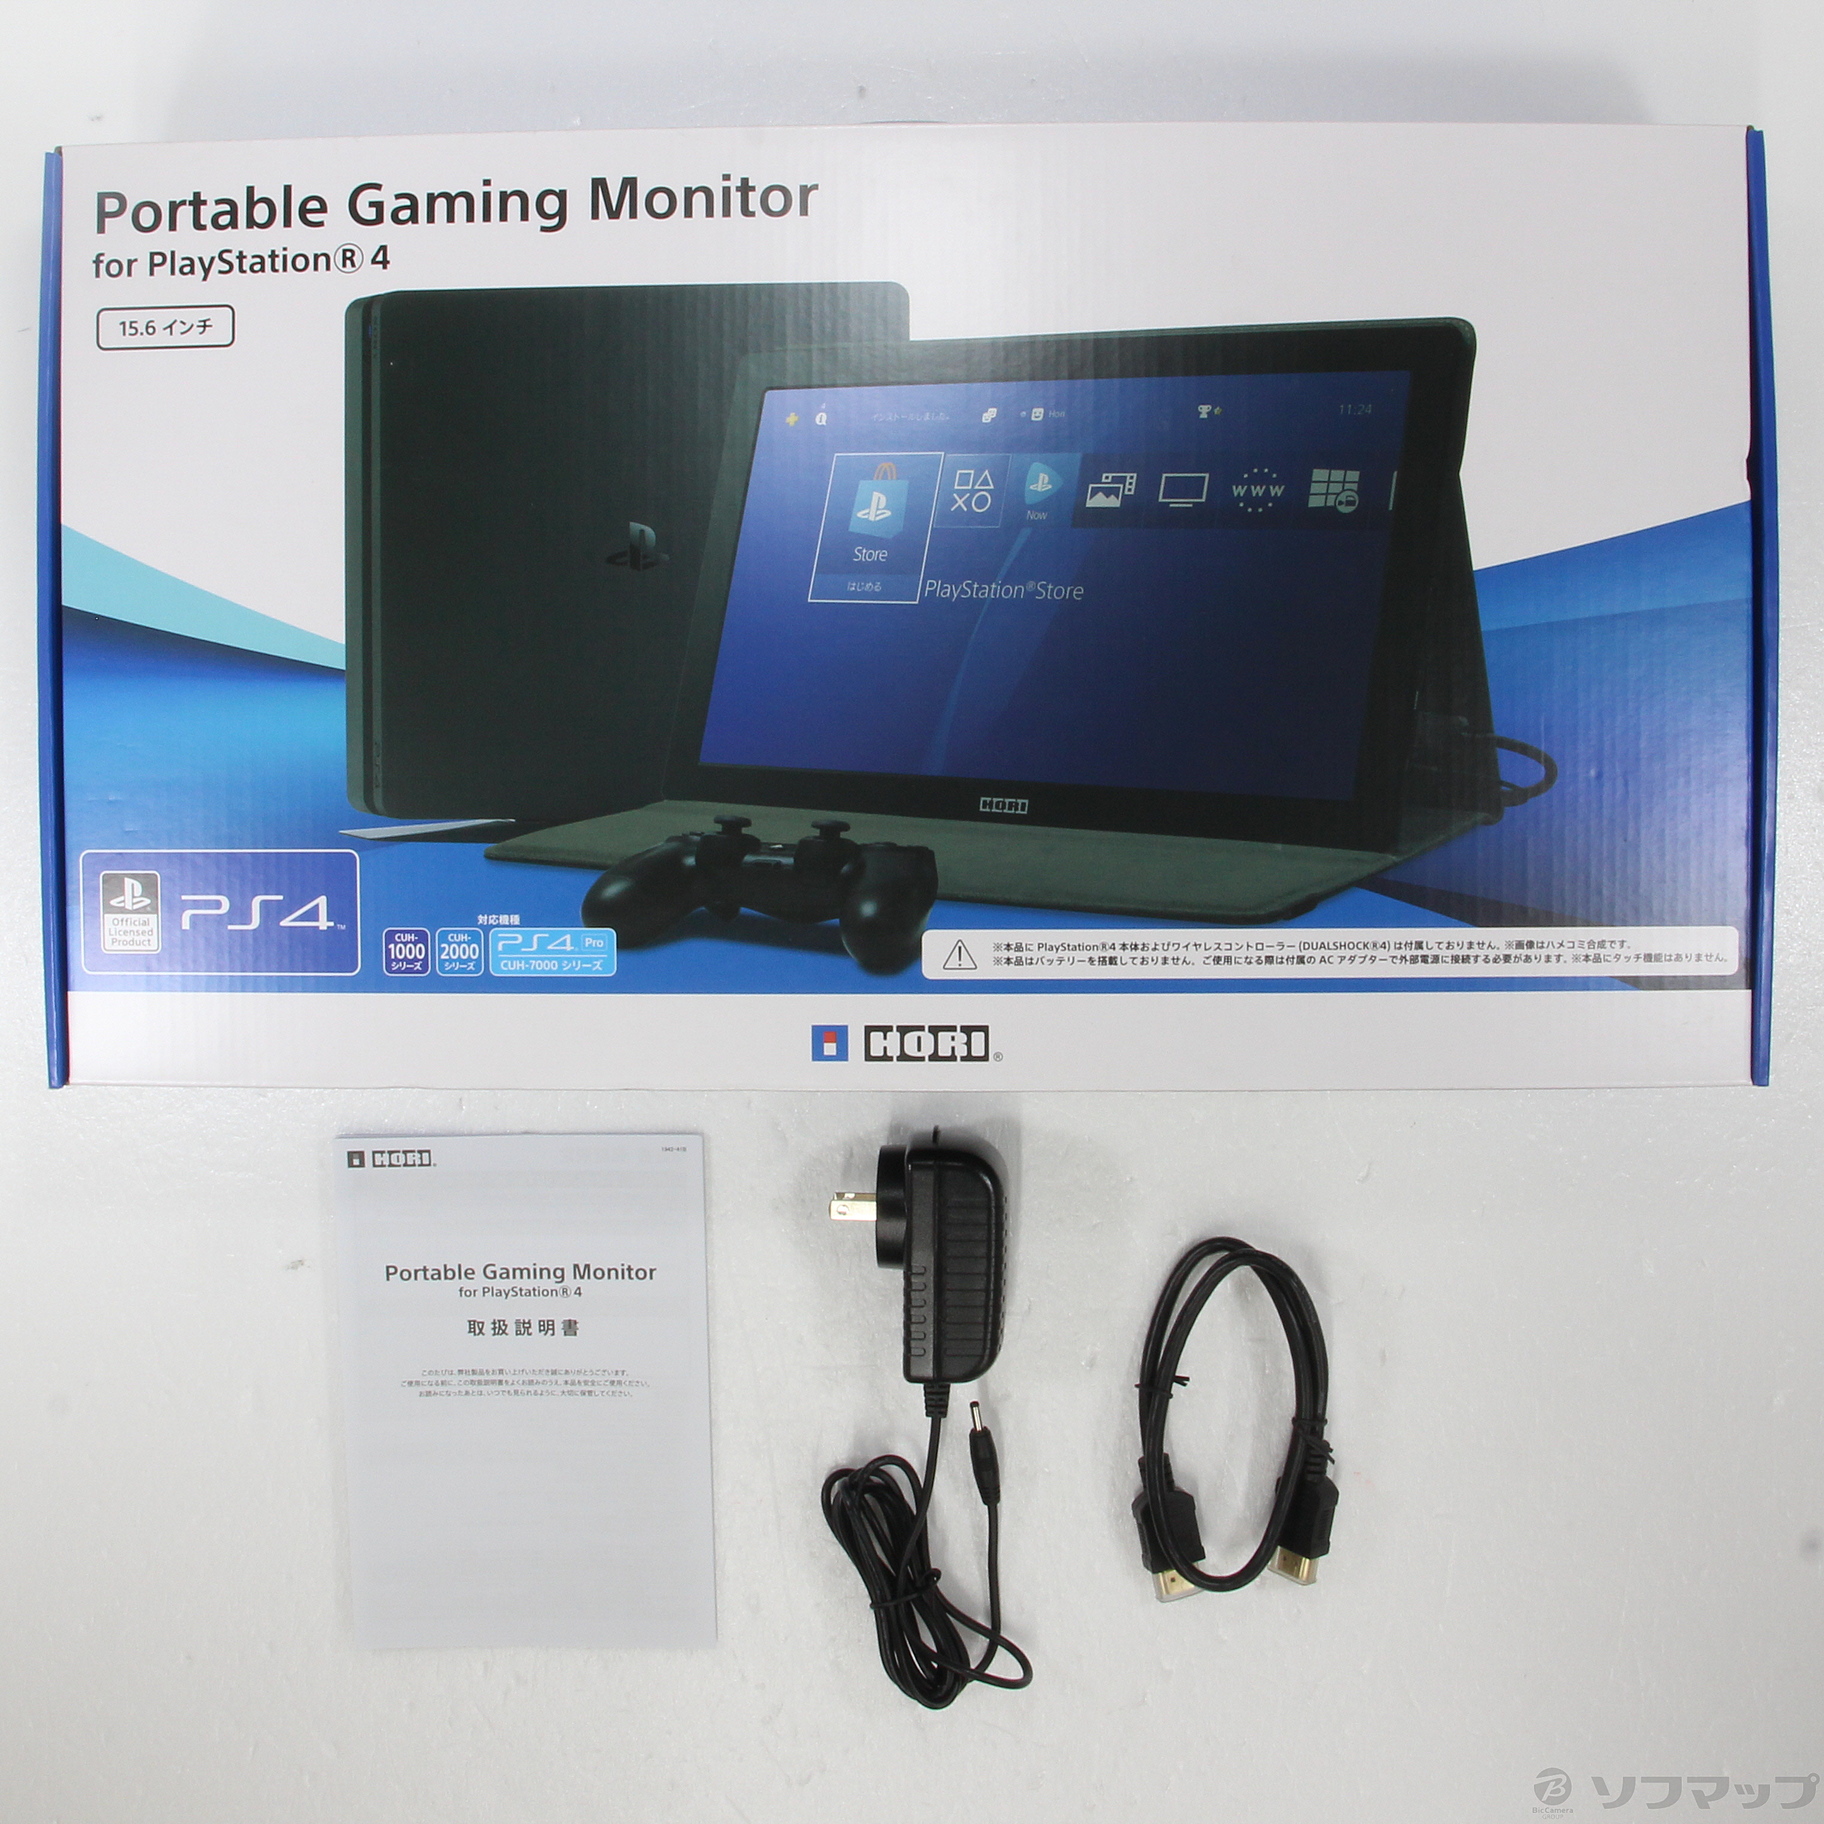 セール対象品 Portable Gaming Monitor for PlayStation4 【PS4】